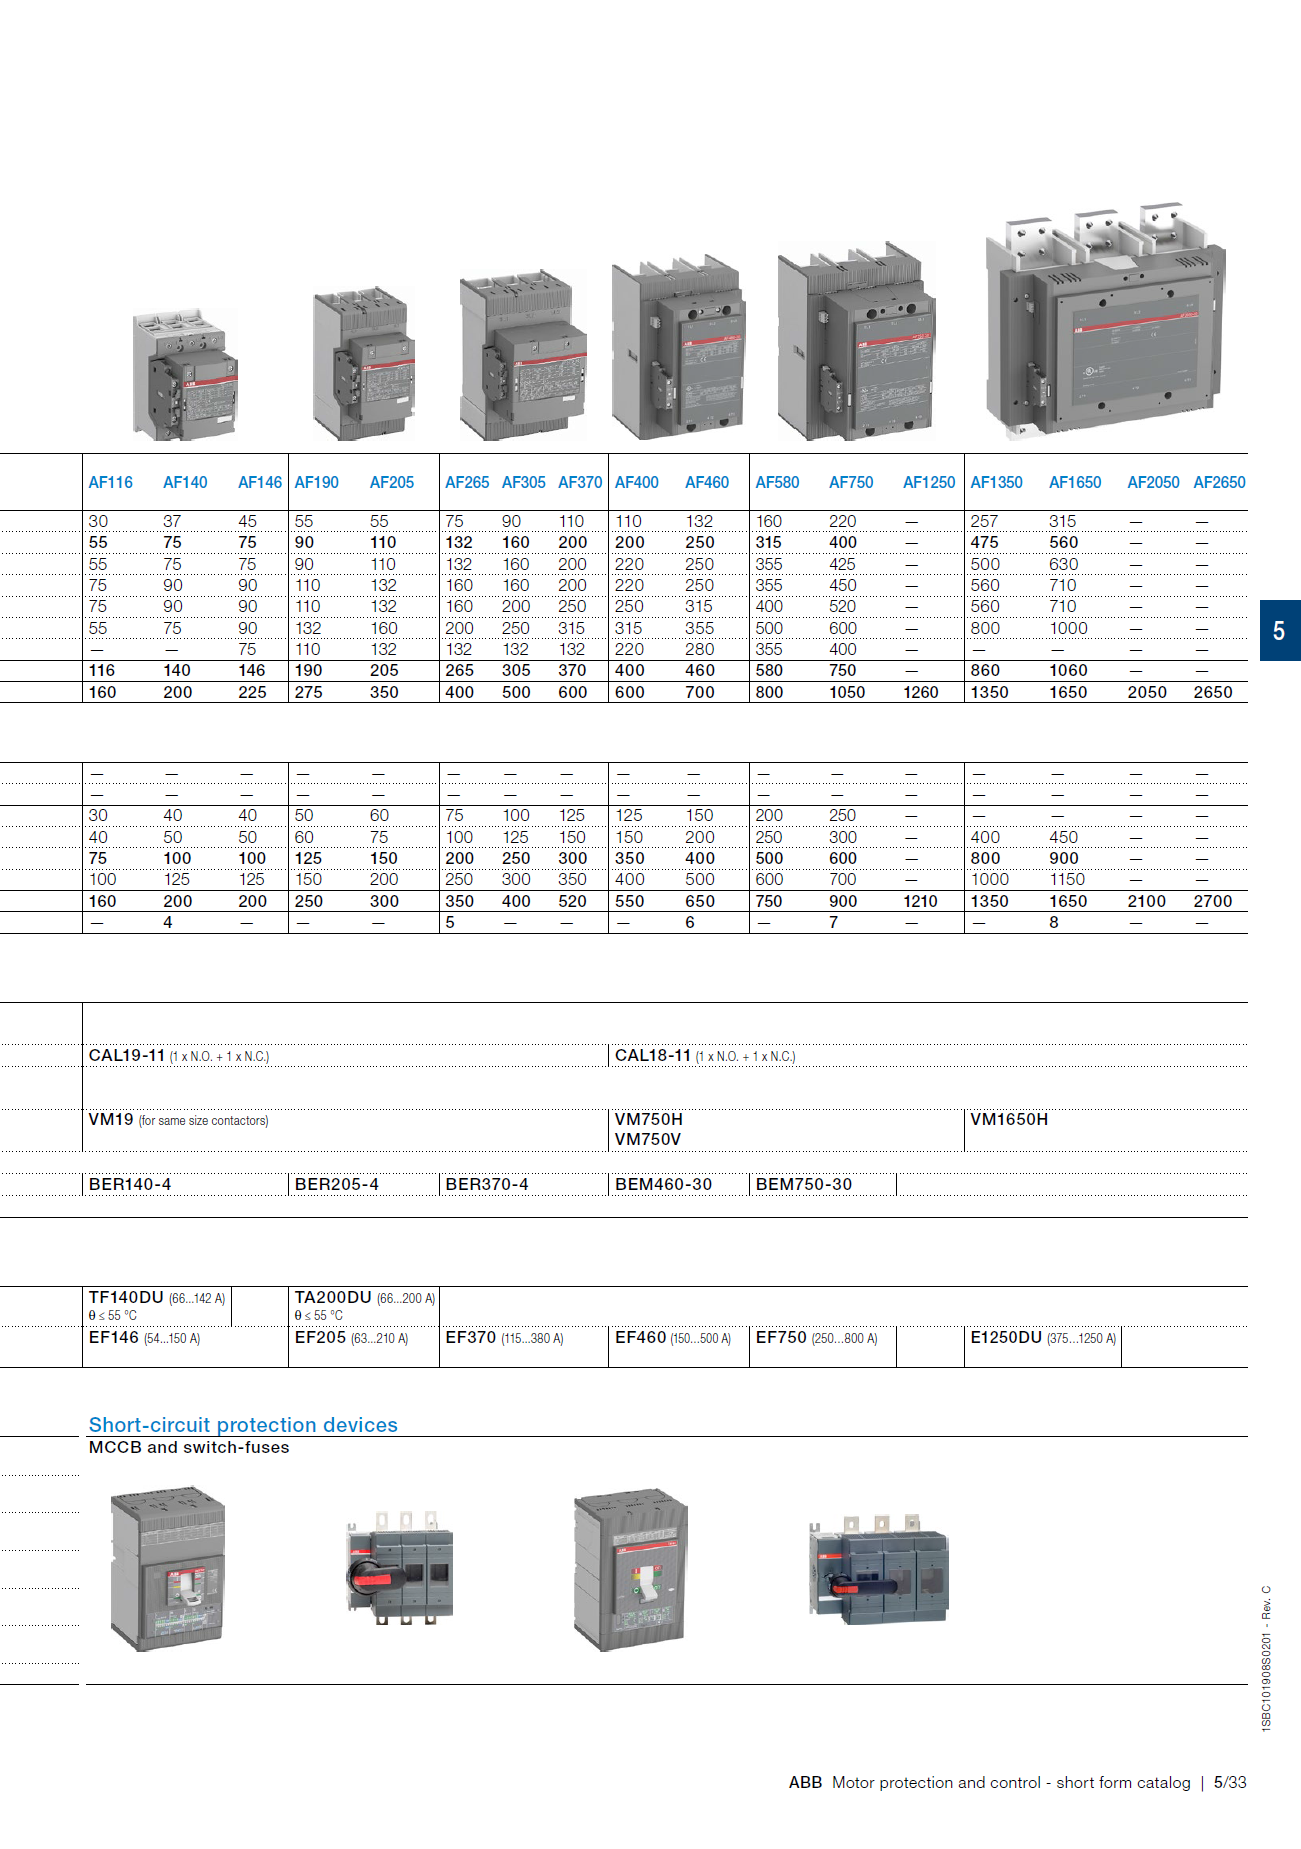 Copy of ABB Magnetic Contactors AF Series : AF190-30-11-11